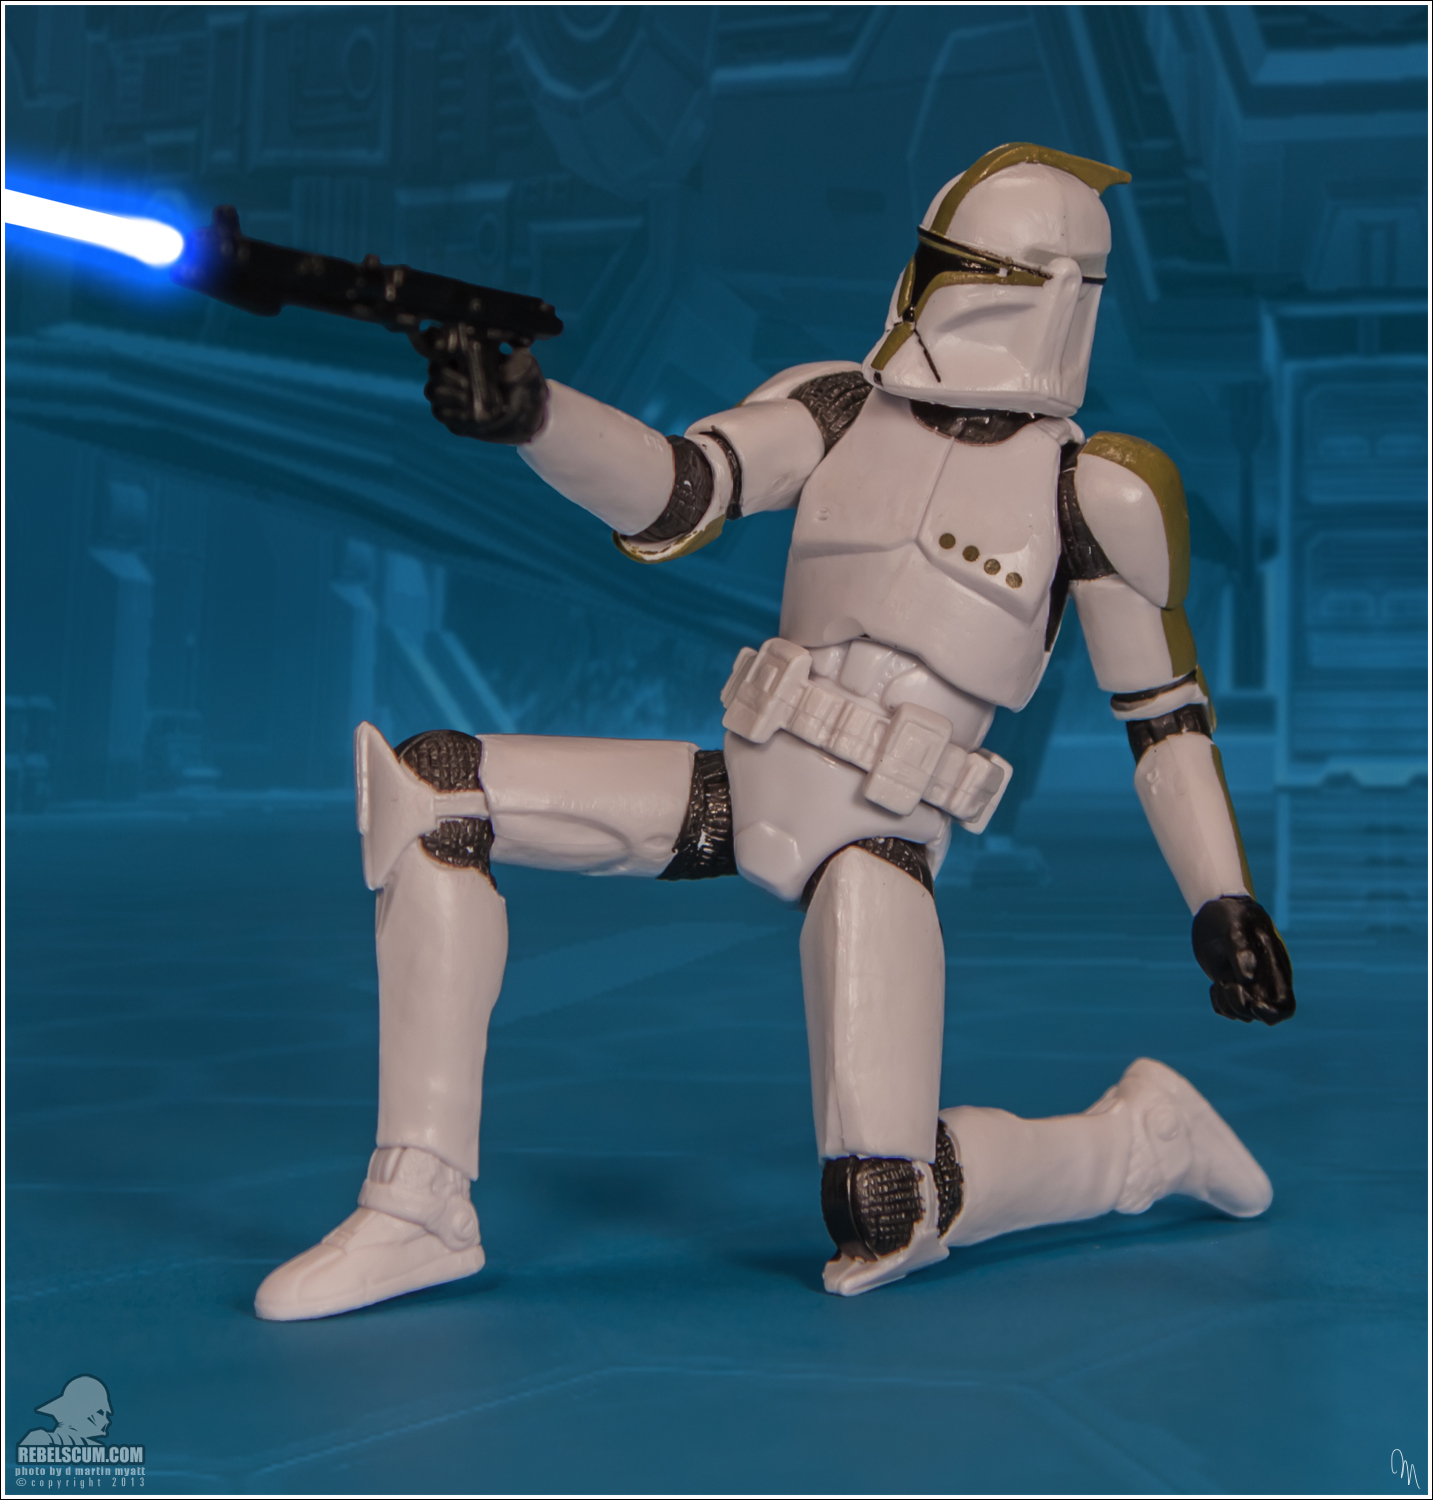 The-Black-Series-Star-Wars-Hasbro-02-Clone-Trooper-Sergeant-020.jpg